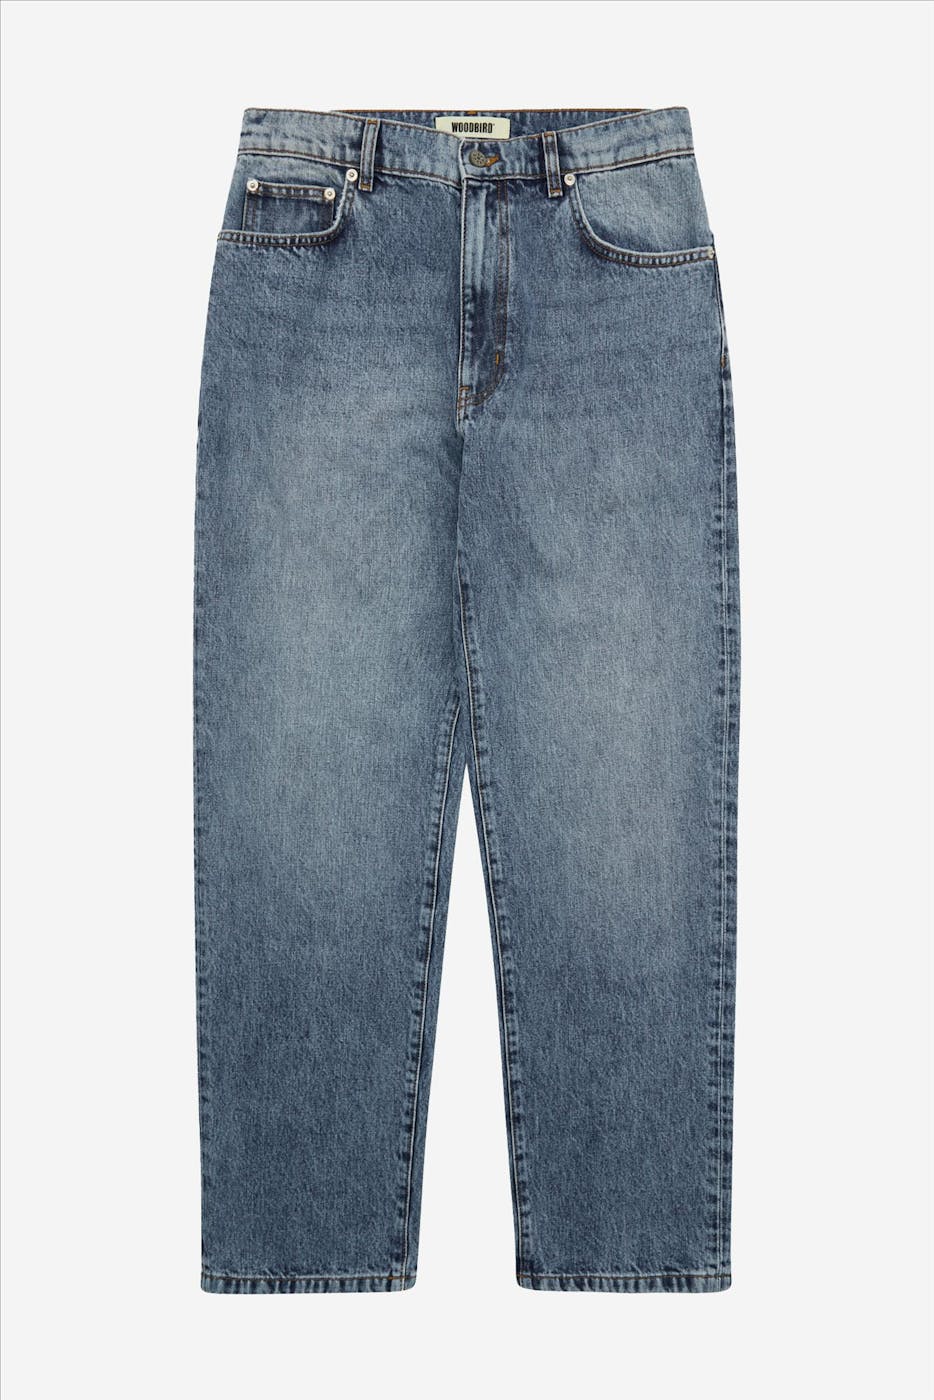 WOODBIRD - Blauwe Leroy Optic jeans